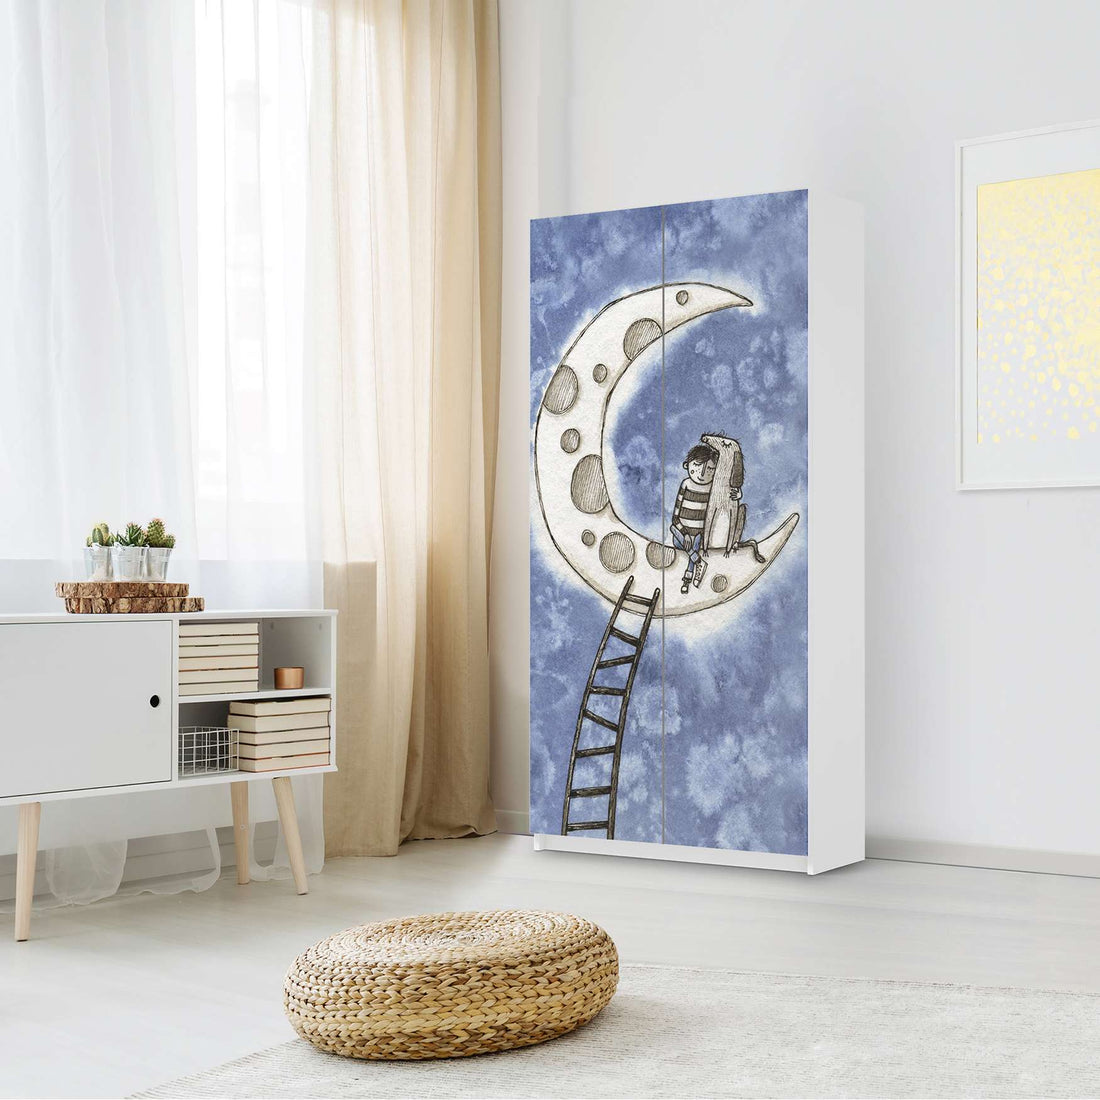 Klebefolie für Möbel Besuch - IKEA Pax Schrank 201 cm Höhe - 2 Türen - Kinderzimmer